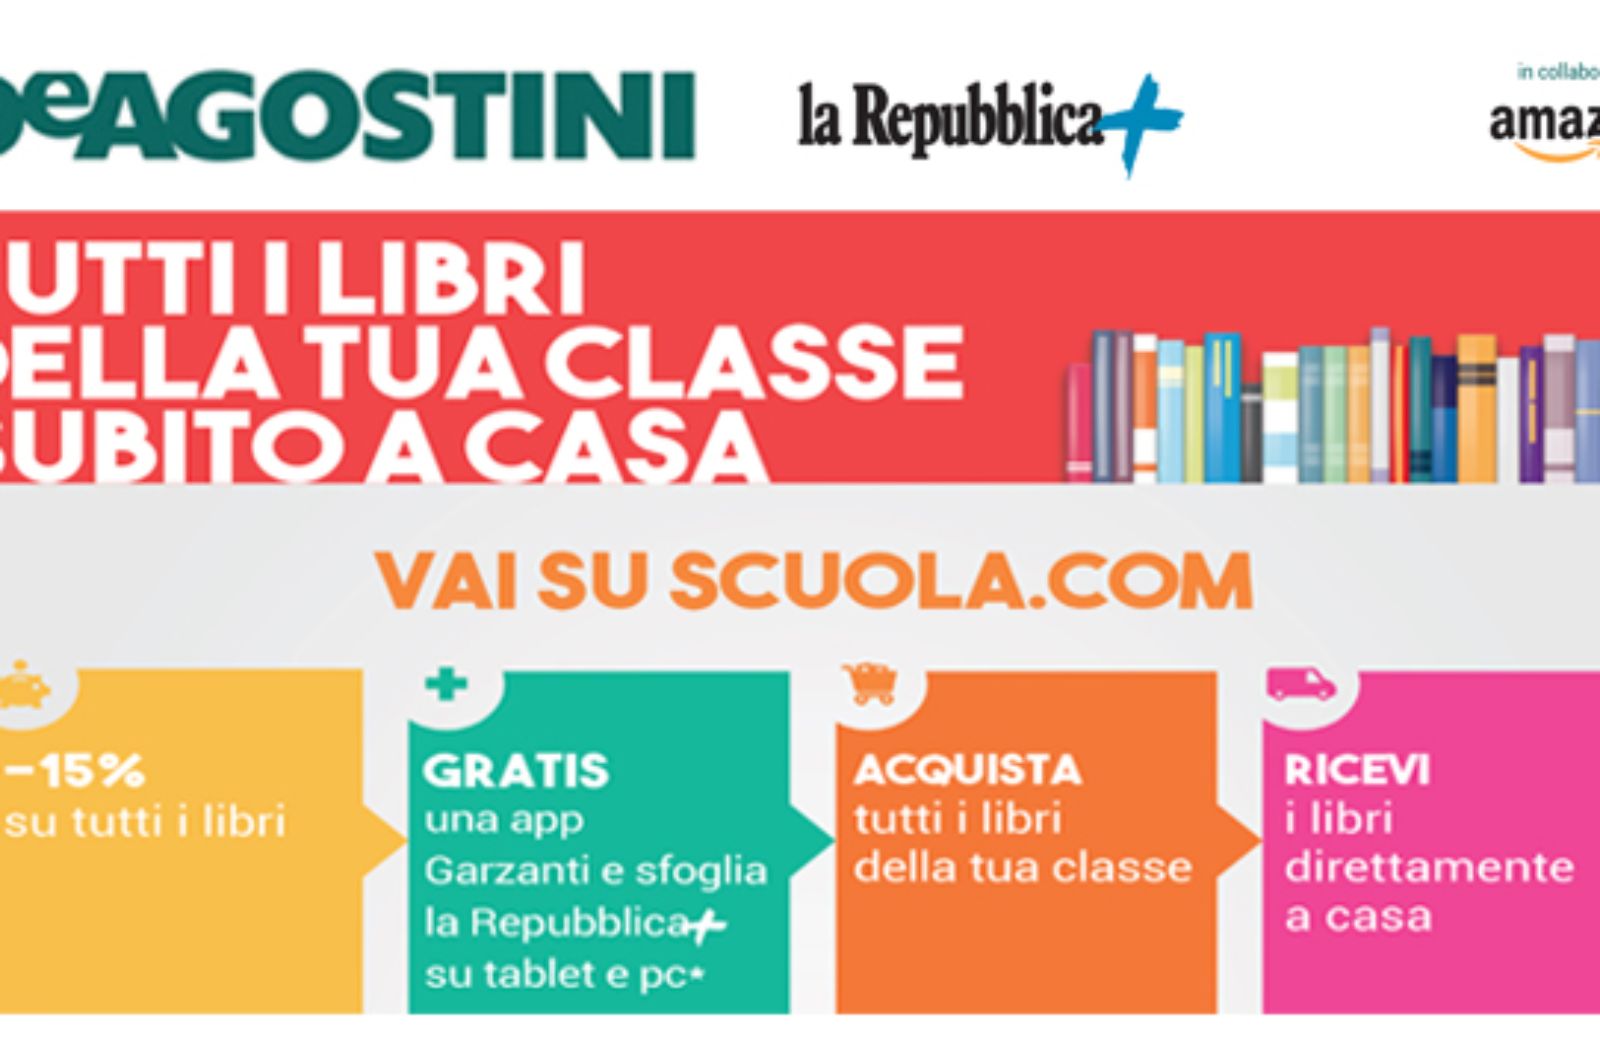 Scuola.com: De Agostini inaugura un nuovo e-commerce 